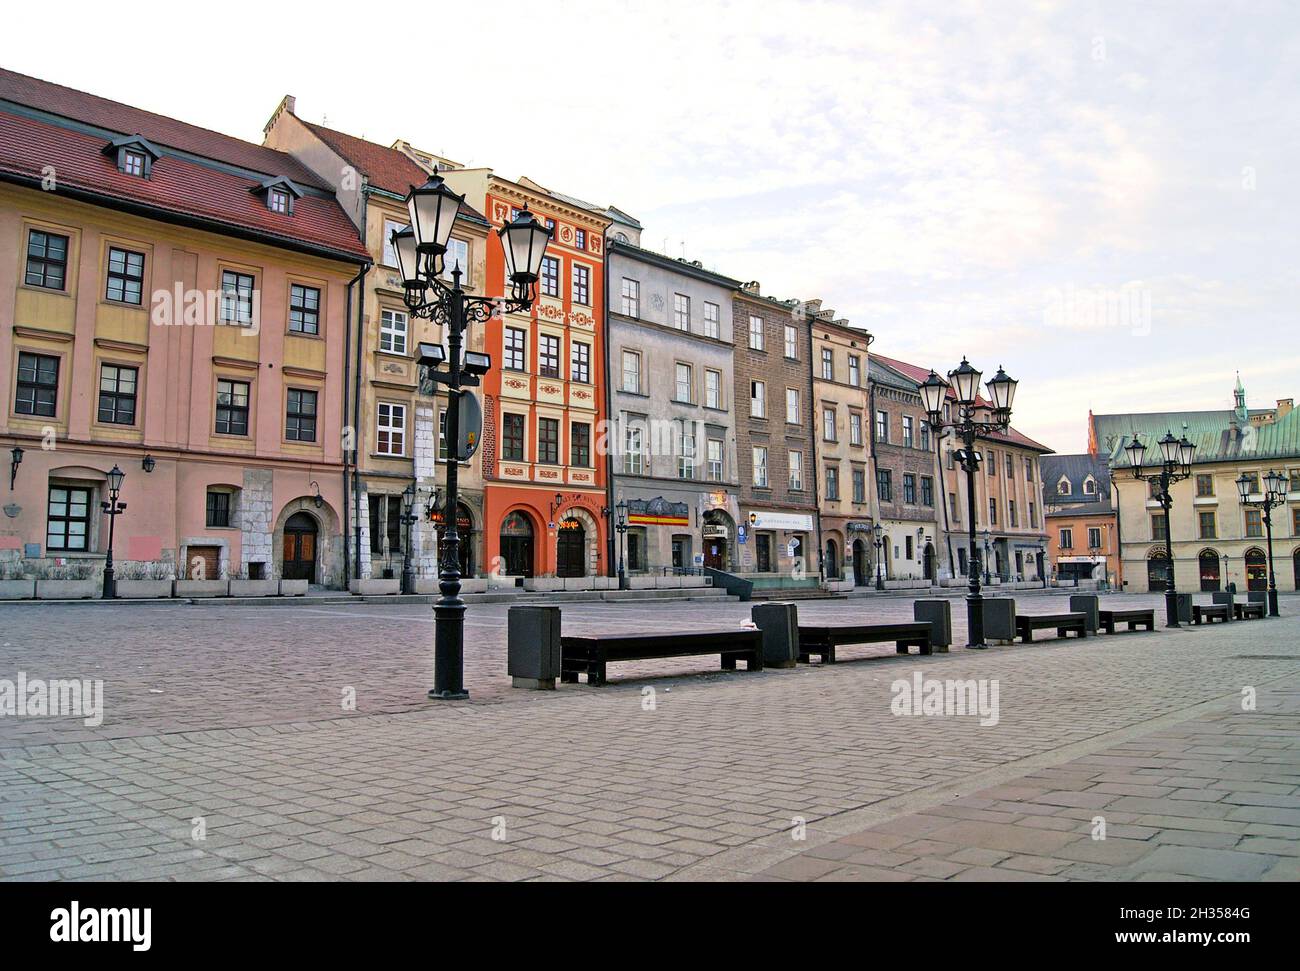 Temprano por la mañana en el casco antiguo de Cracovia, Polonia muestra la arquitectura histórica que contribuye a que toda la Ciudad Vieja se convierta en un lugar declarado Patrimonio de la Humanidad en 1994. Foto de stock